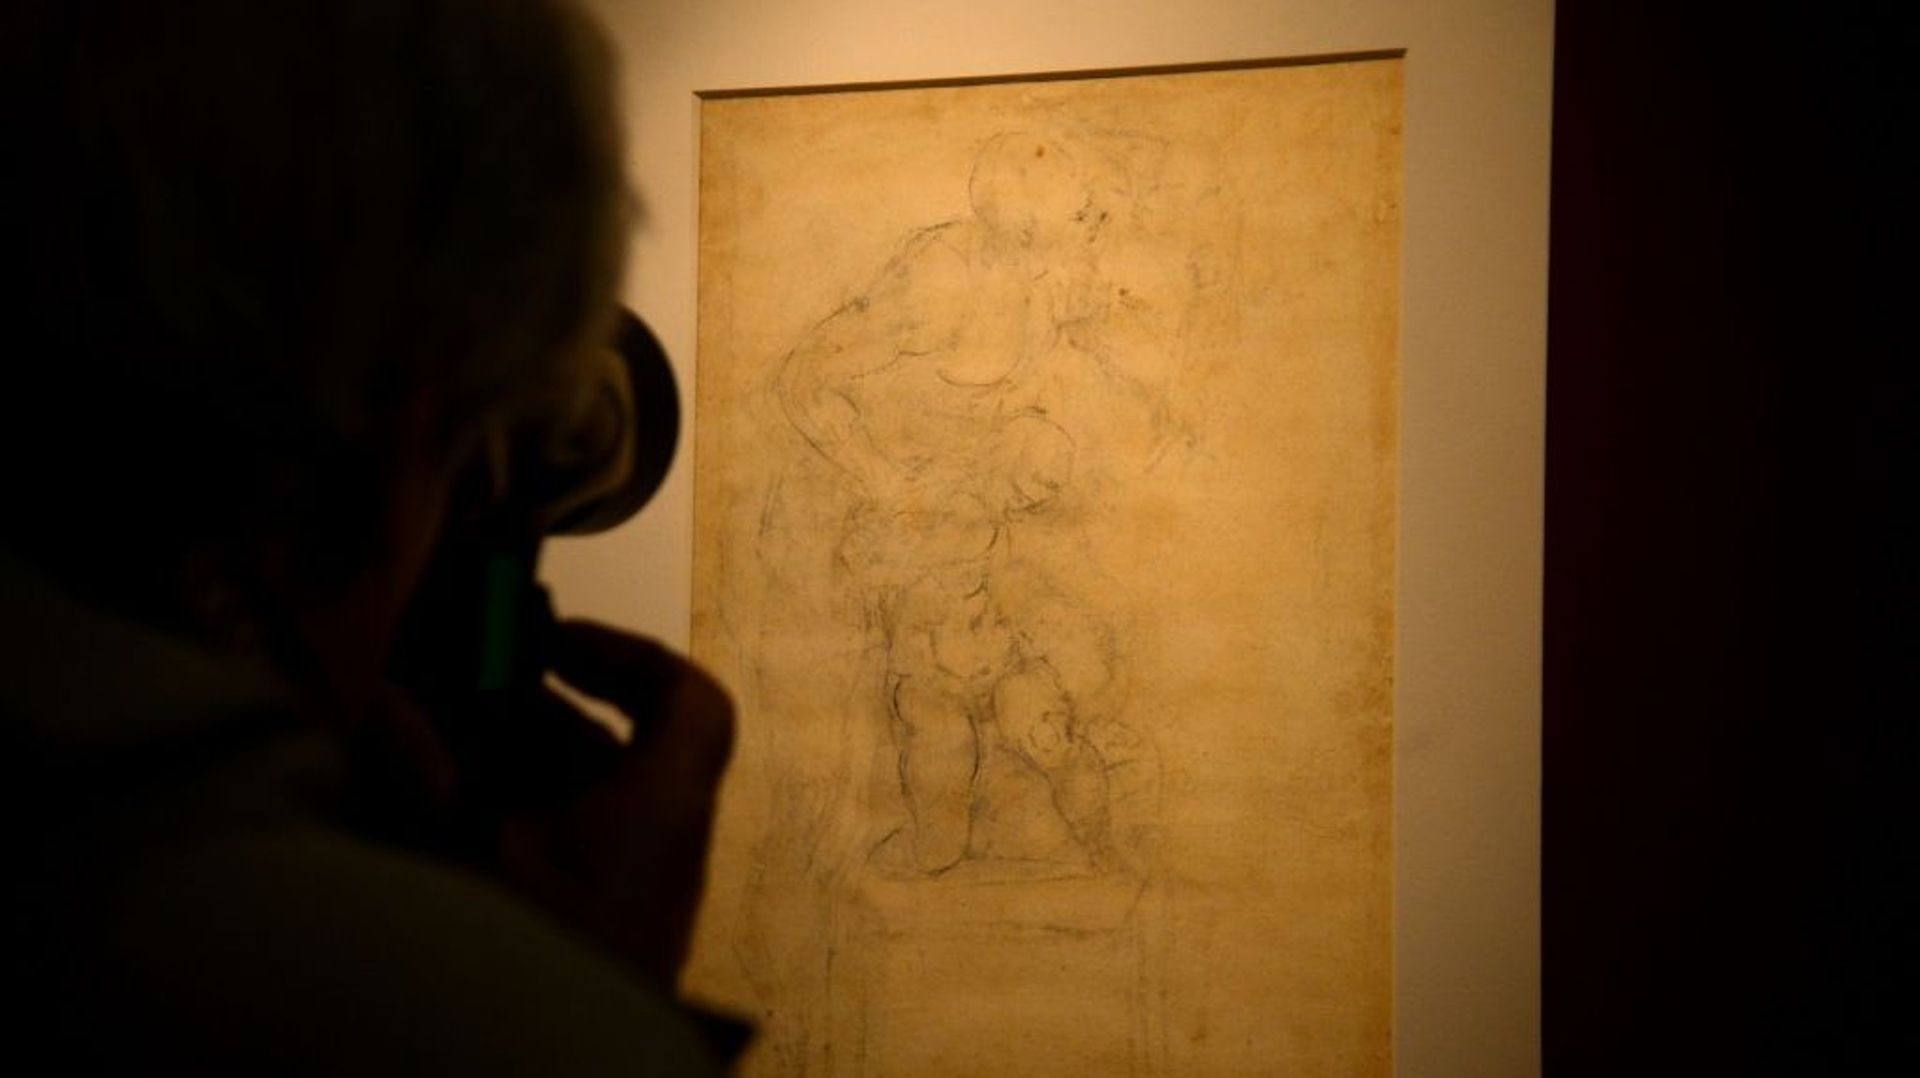 Le dessin de Michel-Ange, "Le Sacrifice d'Isaac" exposé à Rome aux Musées du Capitole, le 21 avril 2017